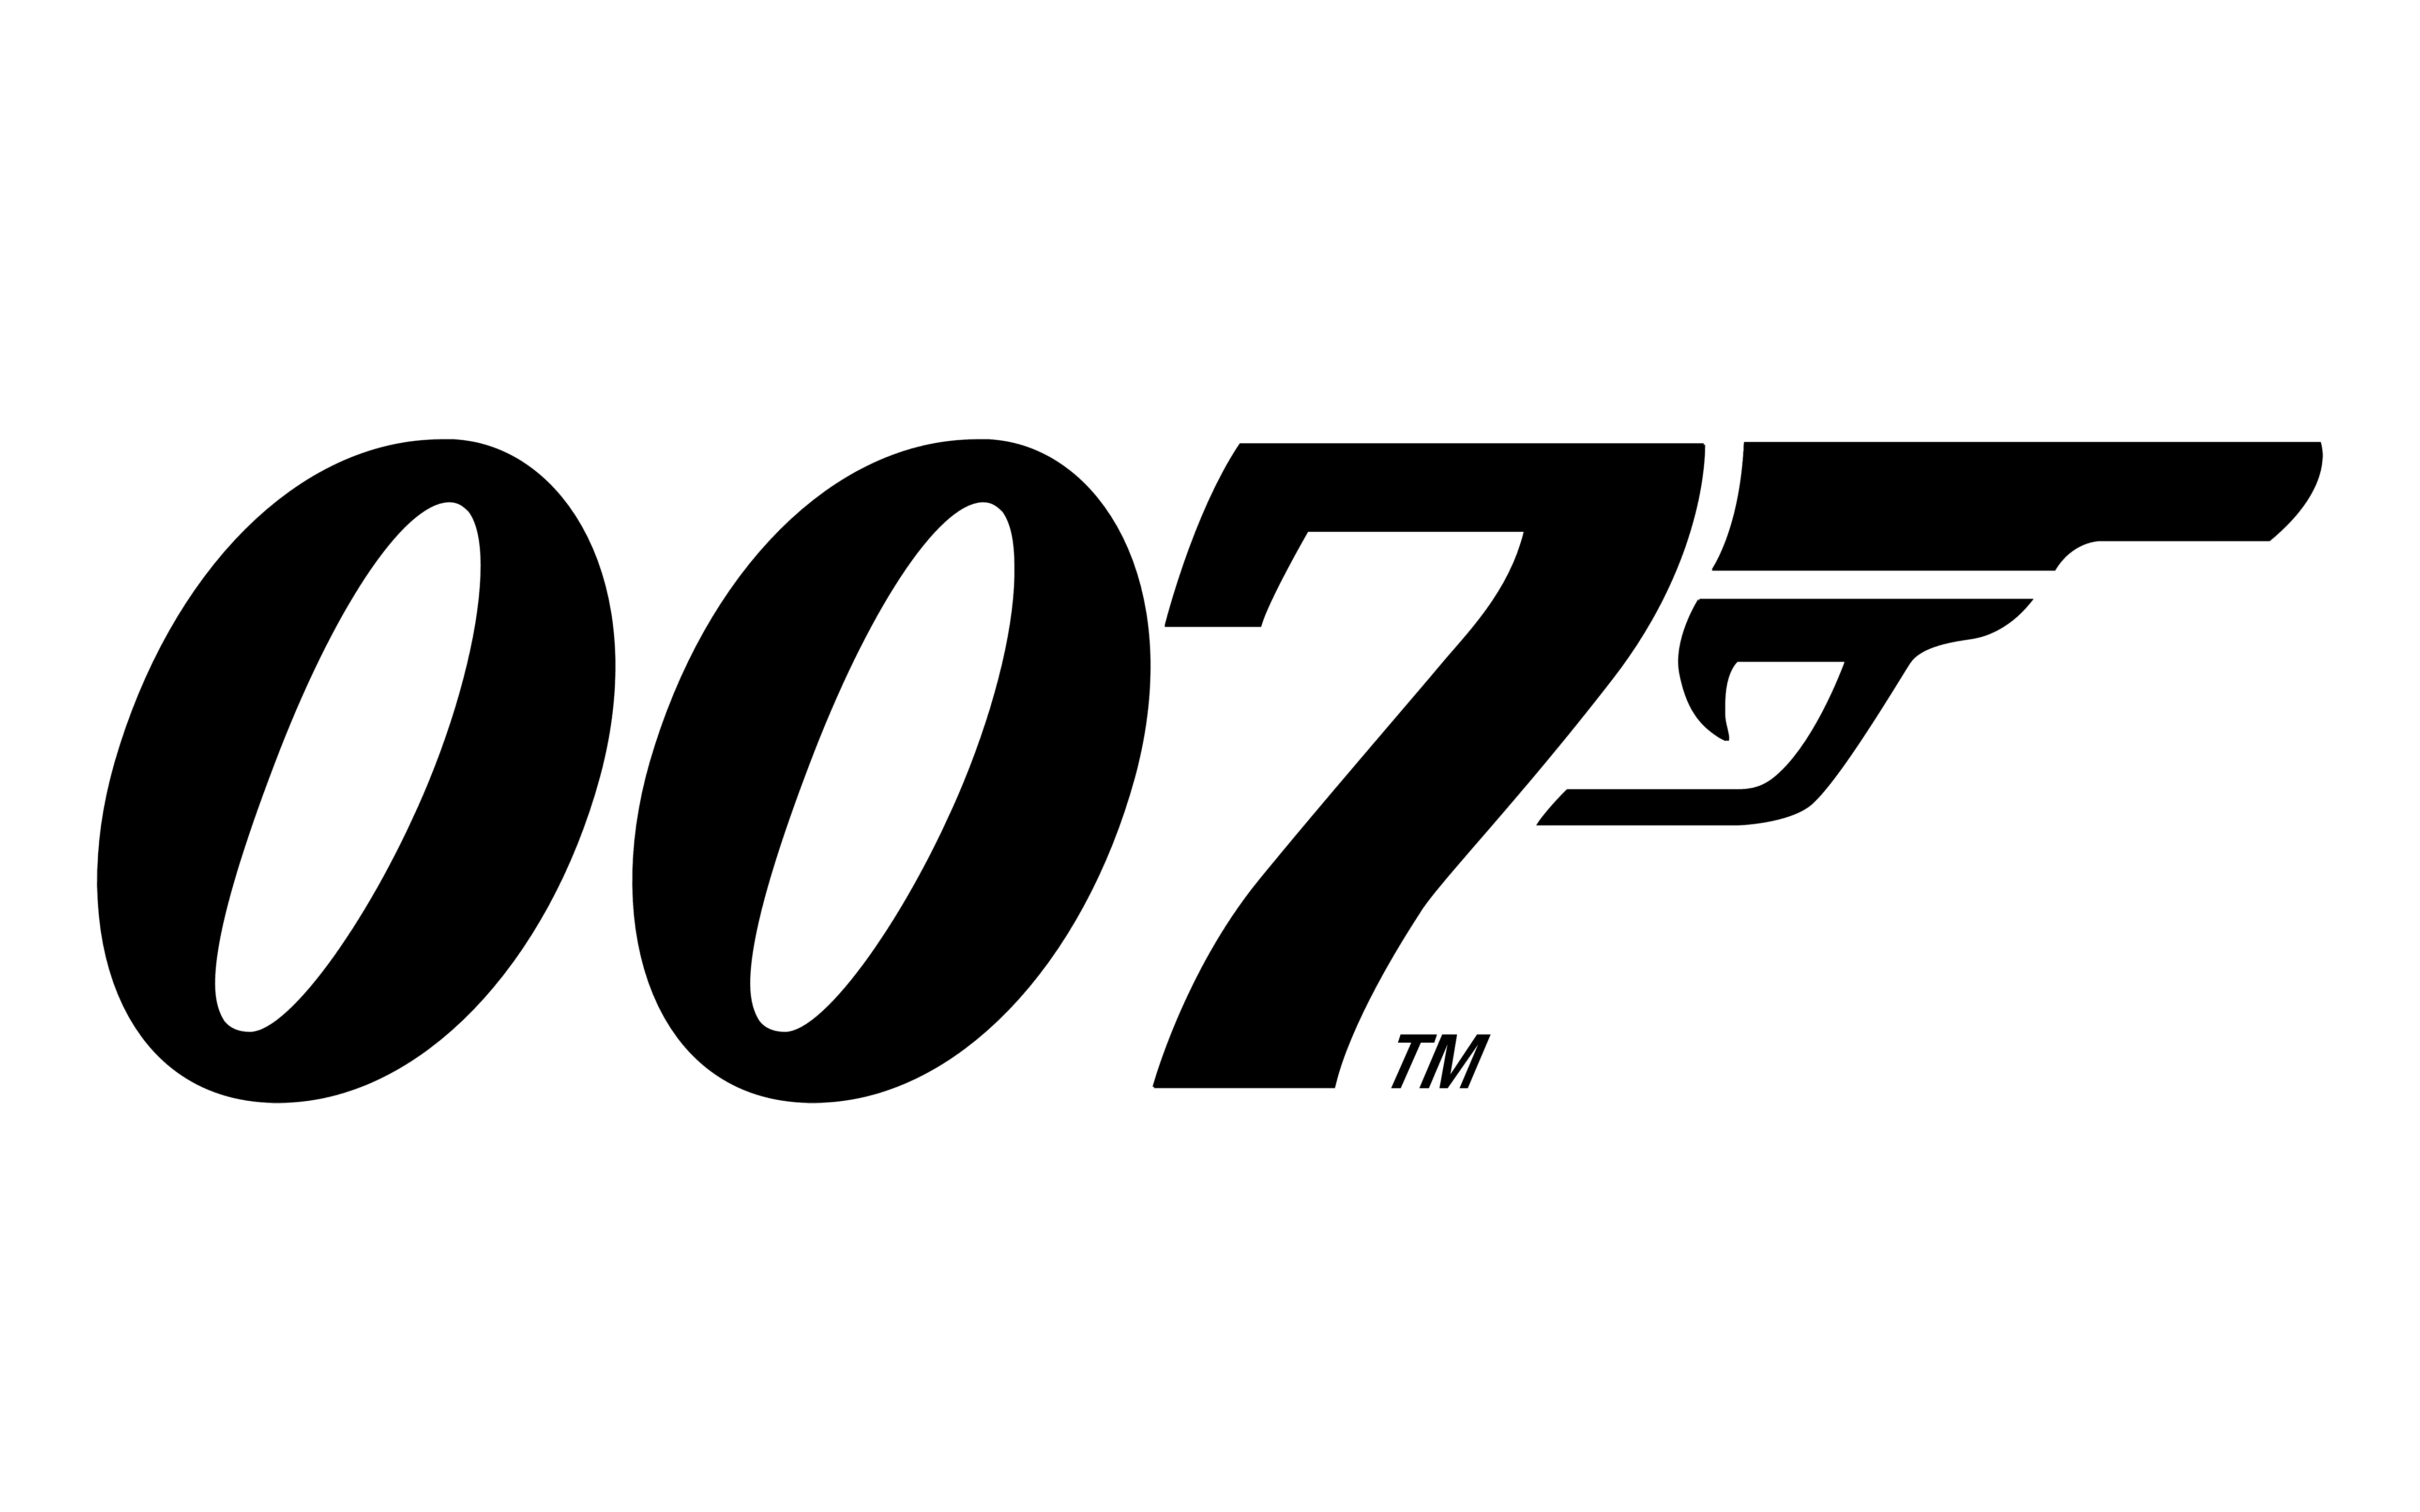 007电影系列Logo历史演变及含义解析